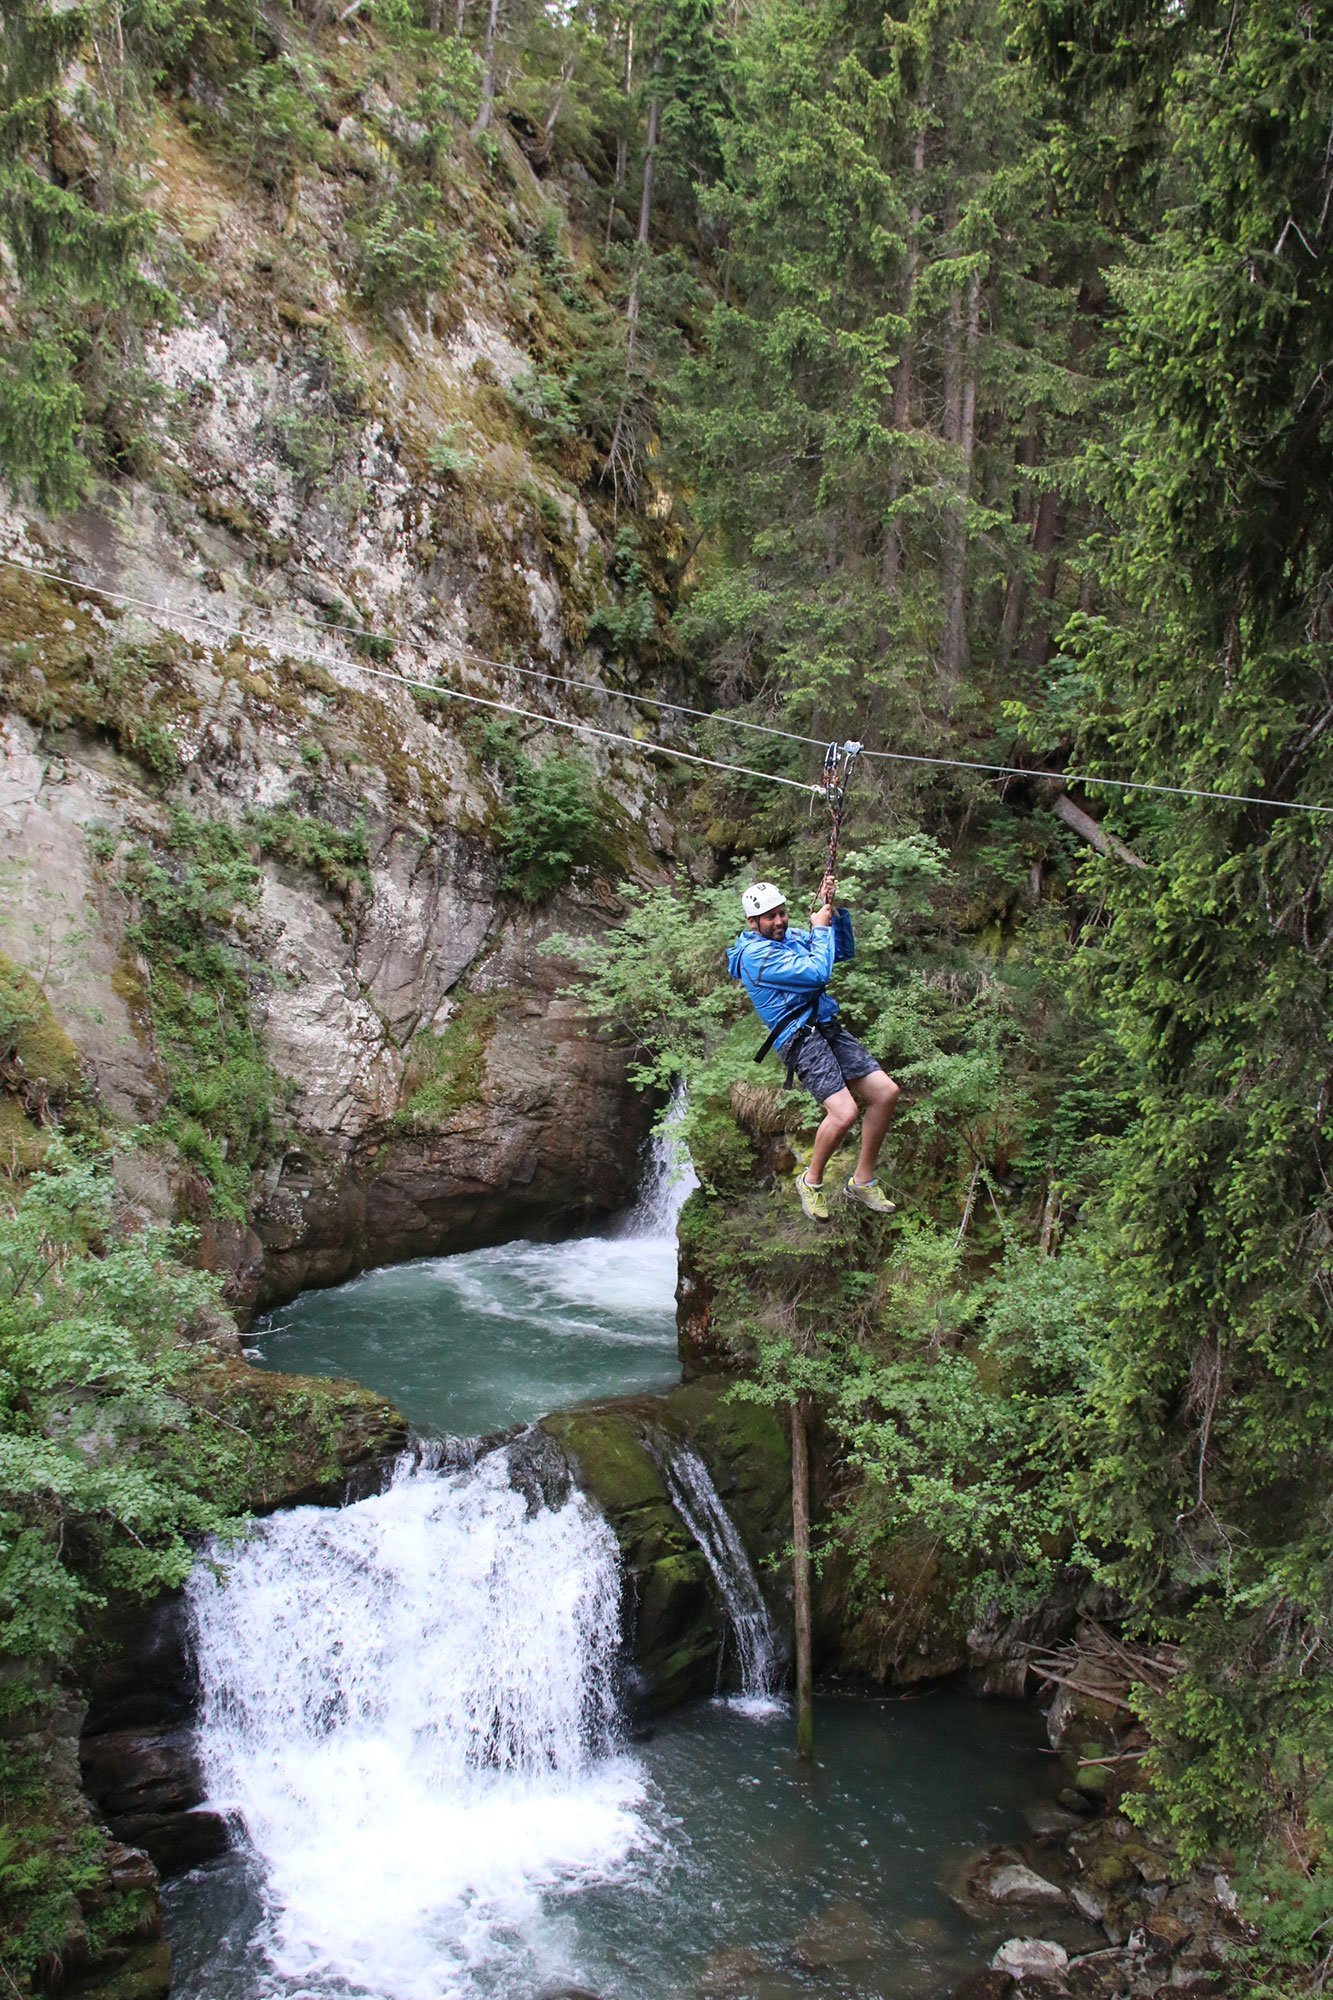 Sorvolare cascate con le zipline! Tarzaning in Val di Sole